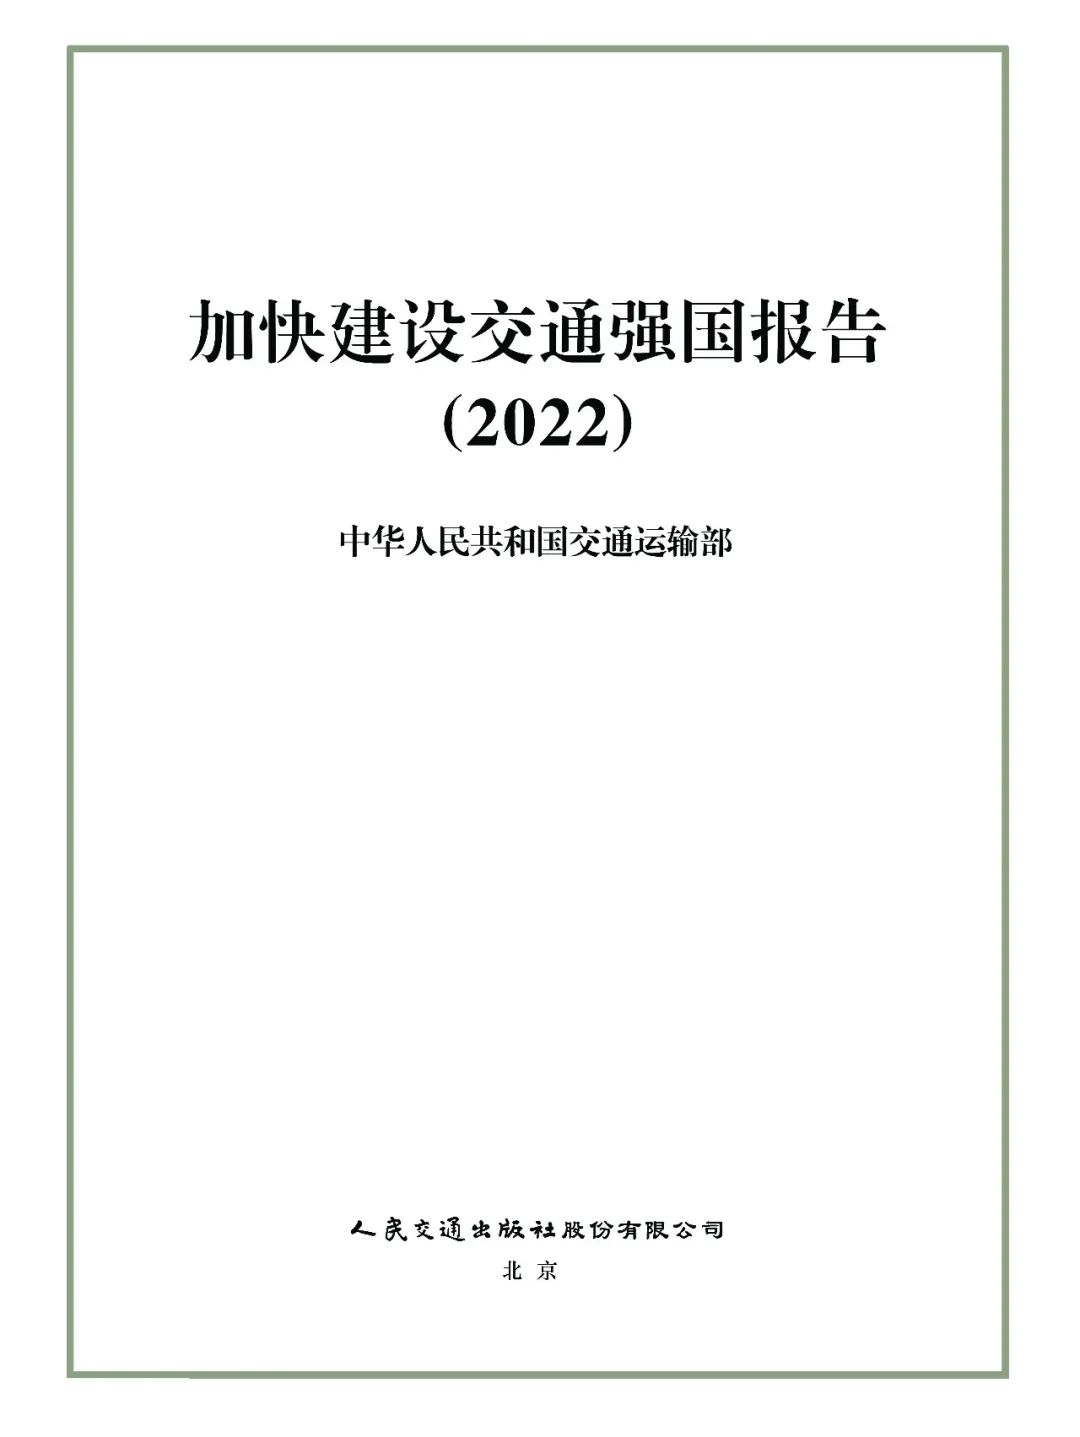 加快建设交通强国报告（2022）发布.jpg